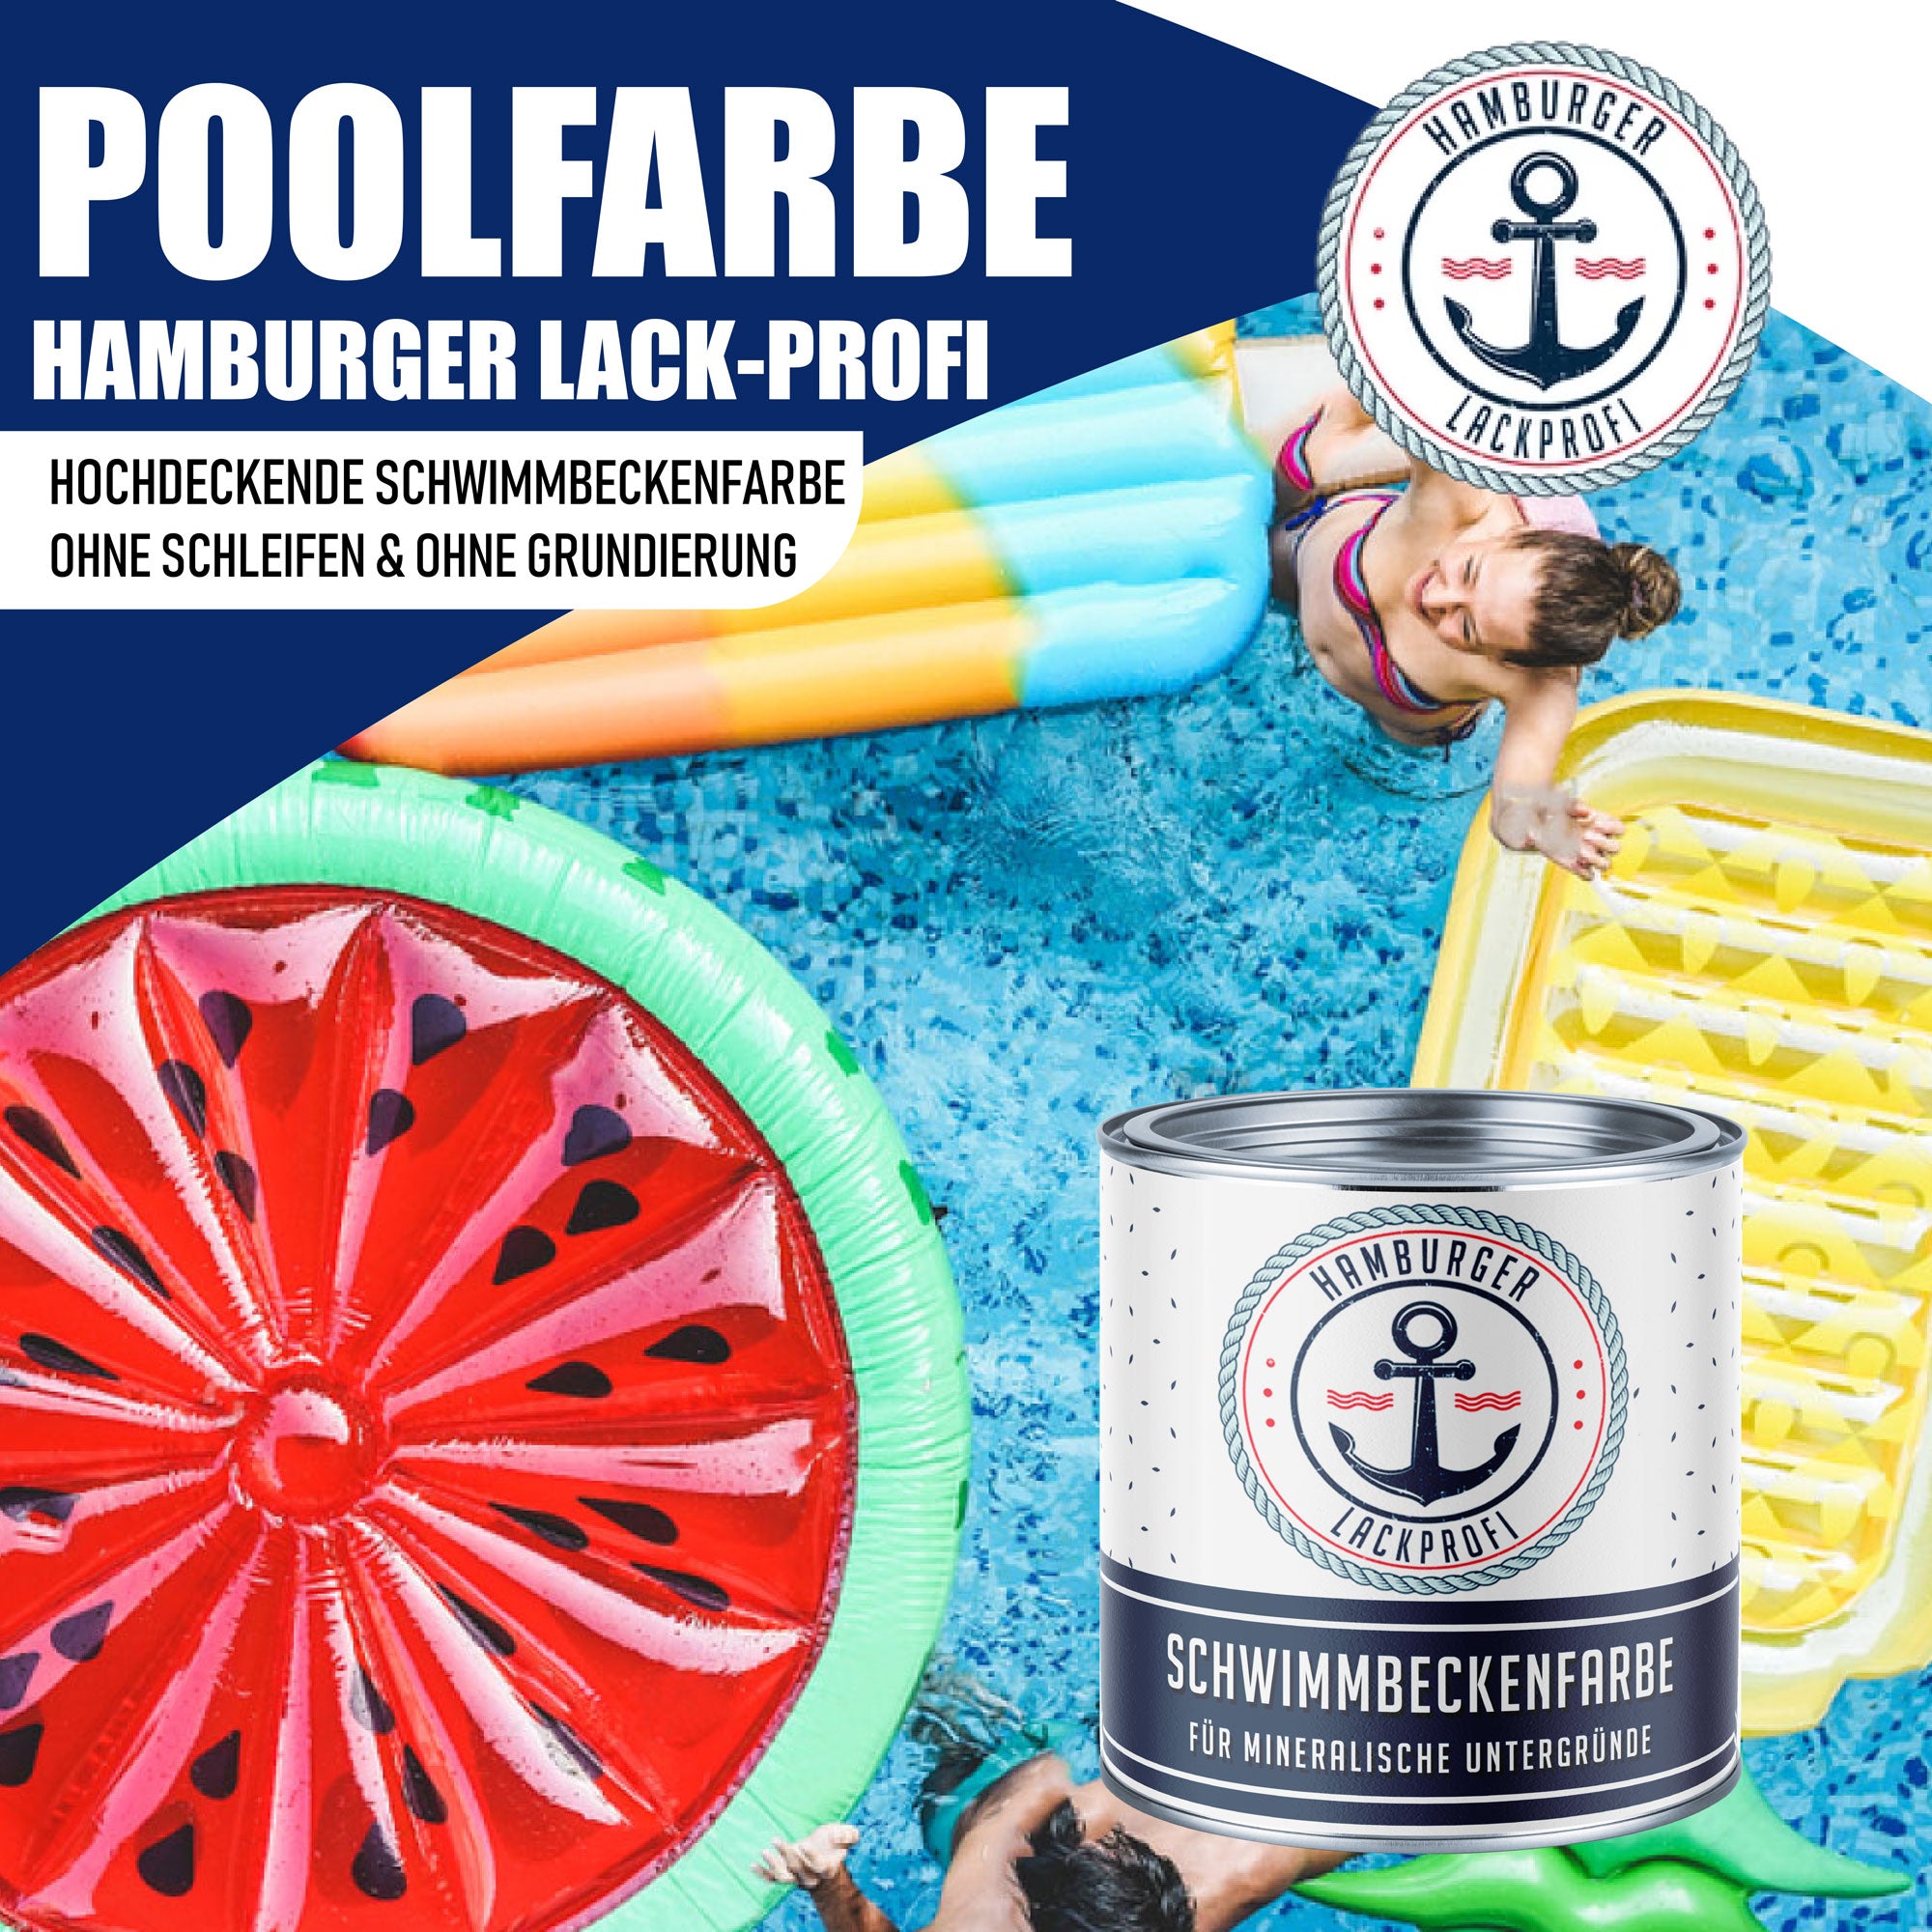 Hamburger Lack-Profi Schwimmbeckenfarbe Narzissengelb RAL 1007 - hochdeckende Poolfarbe